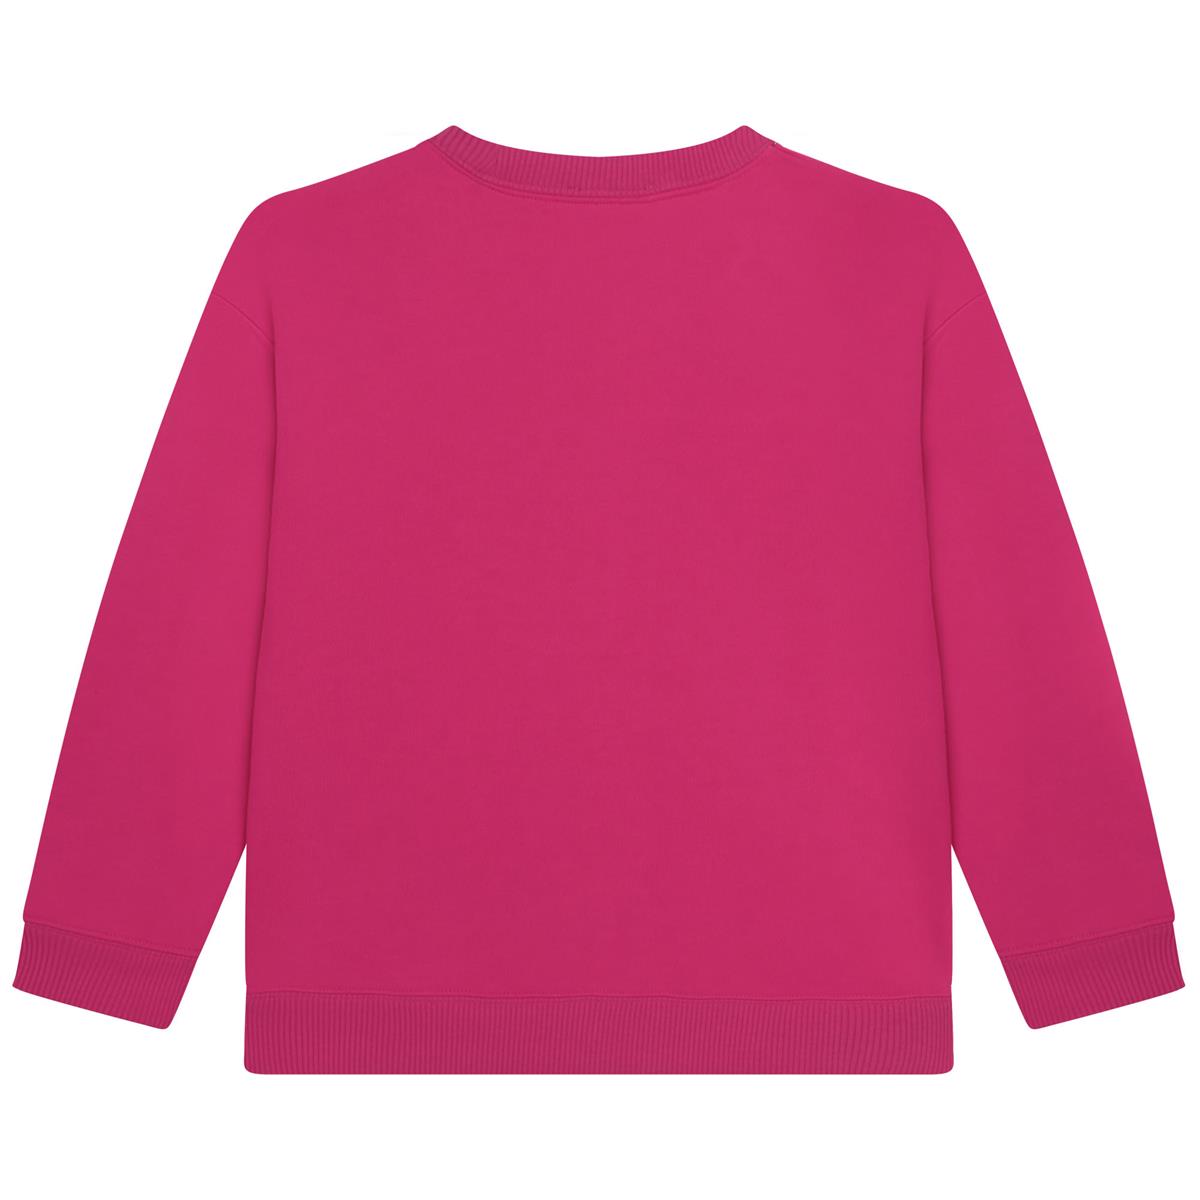 Girls Fuchsia Sweatshirt